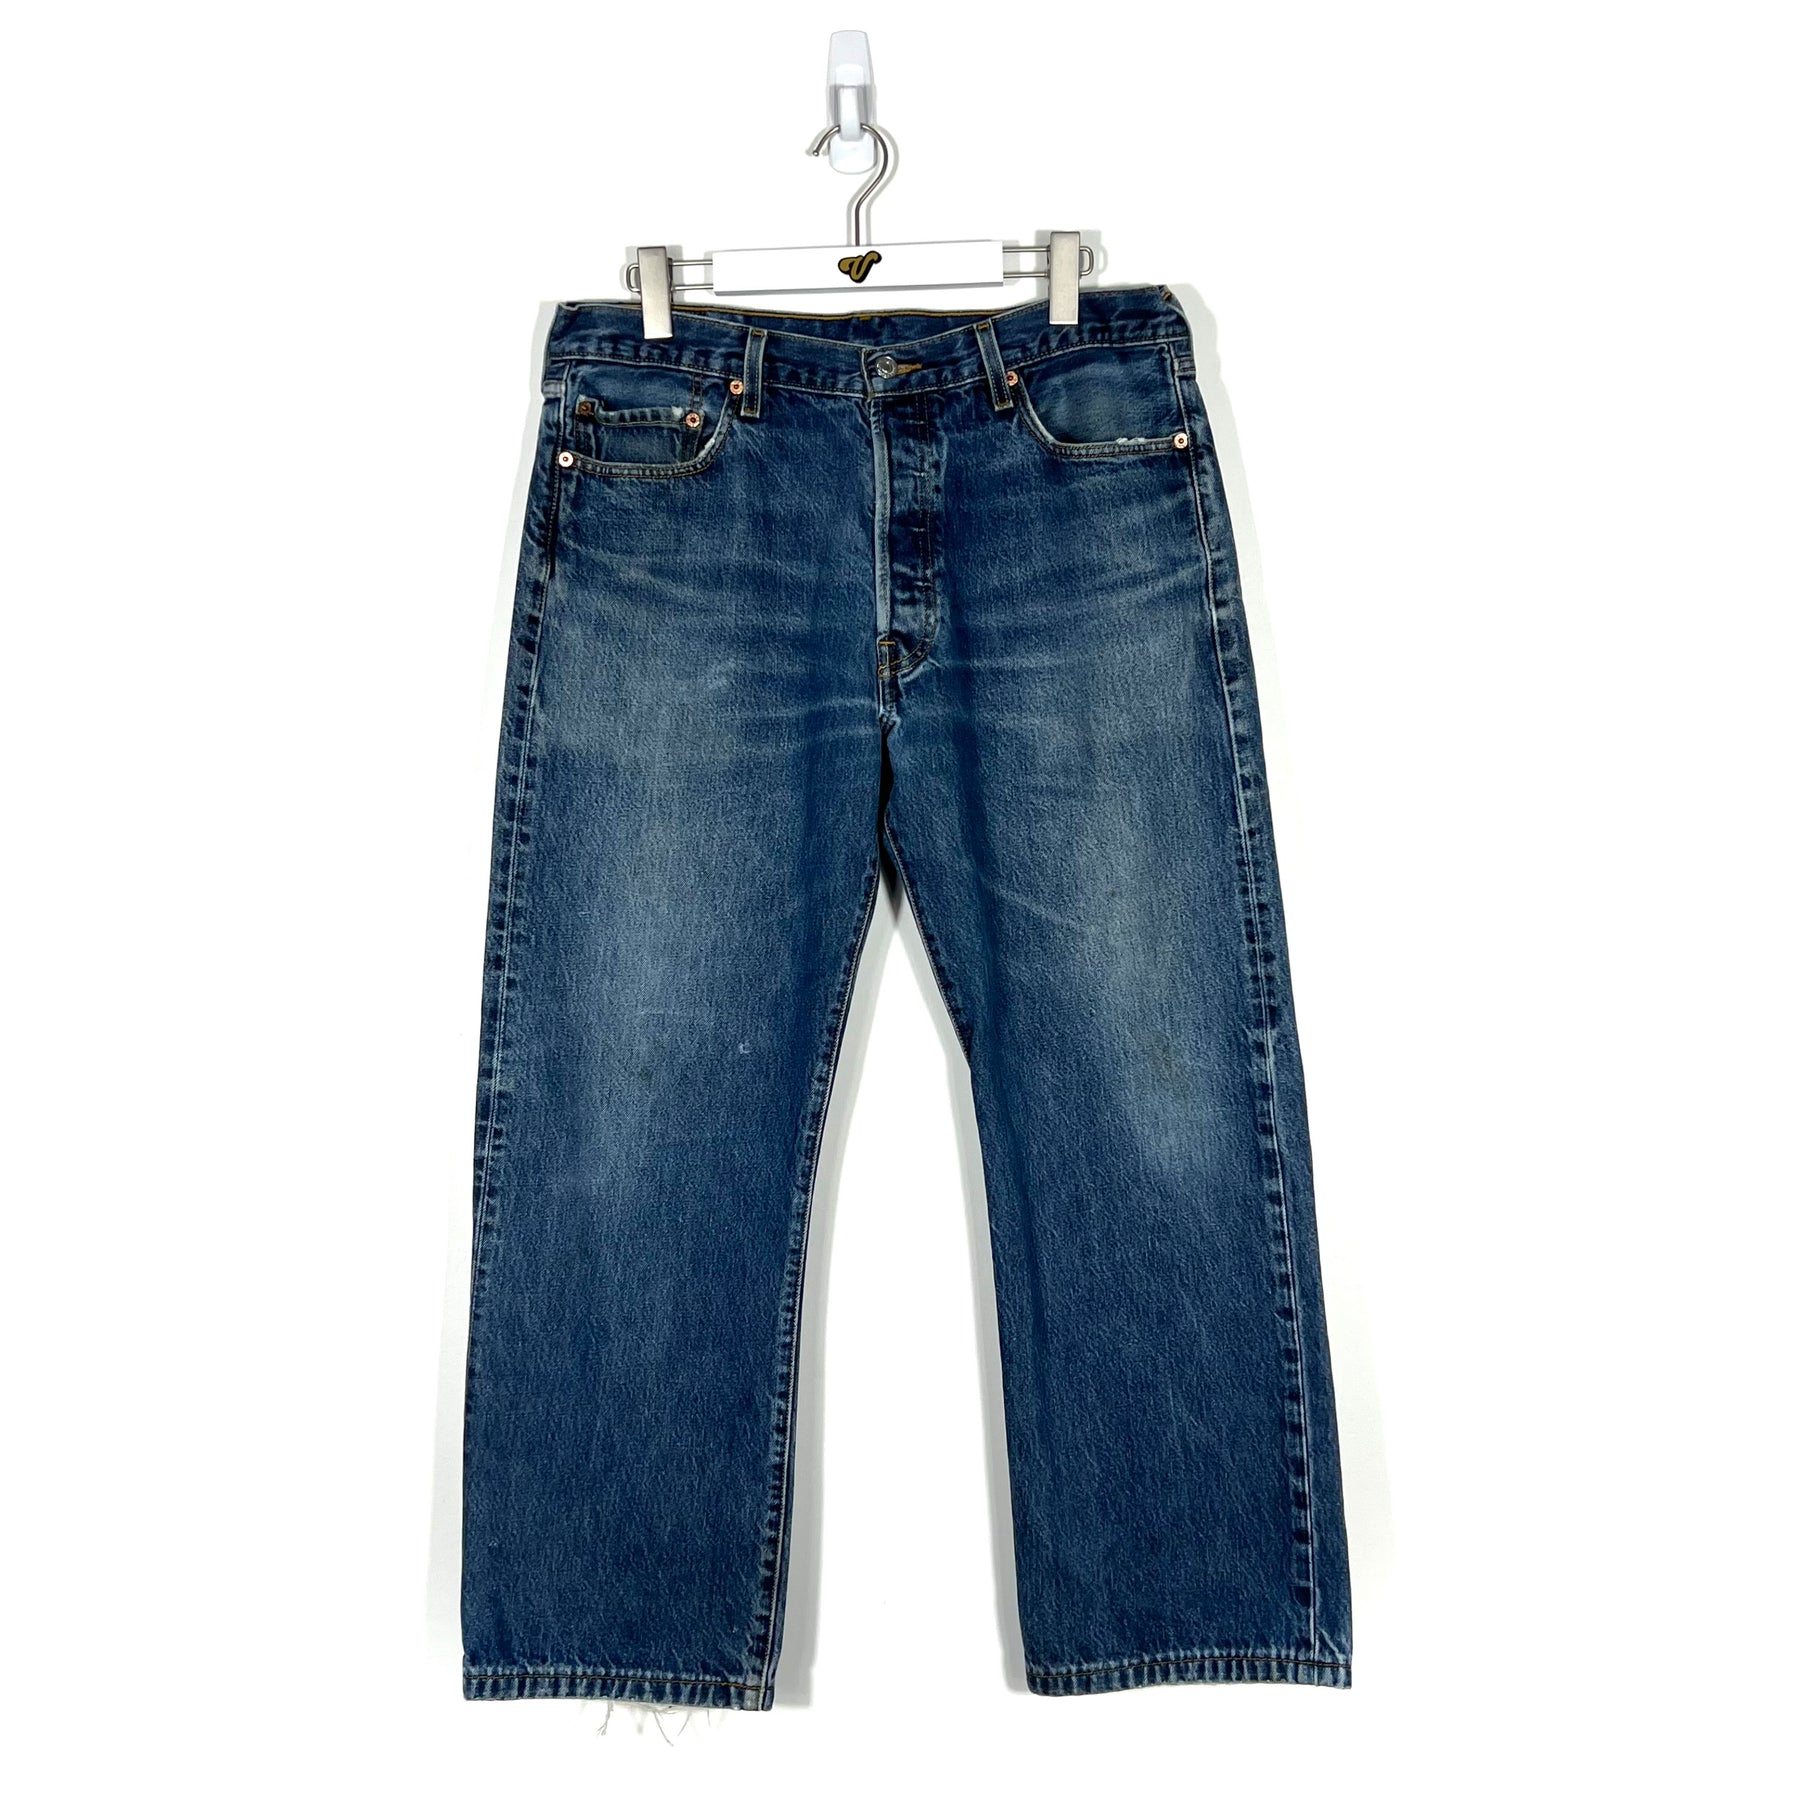 Vintage Levis 501 Jeans - Men's 36/30